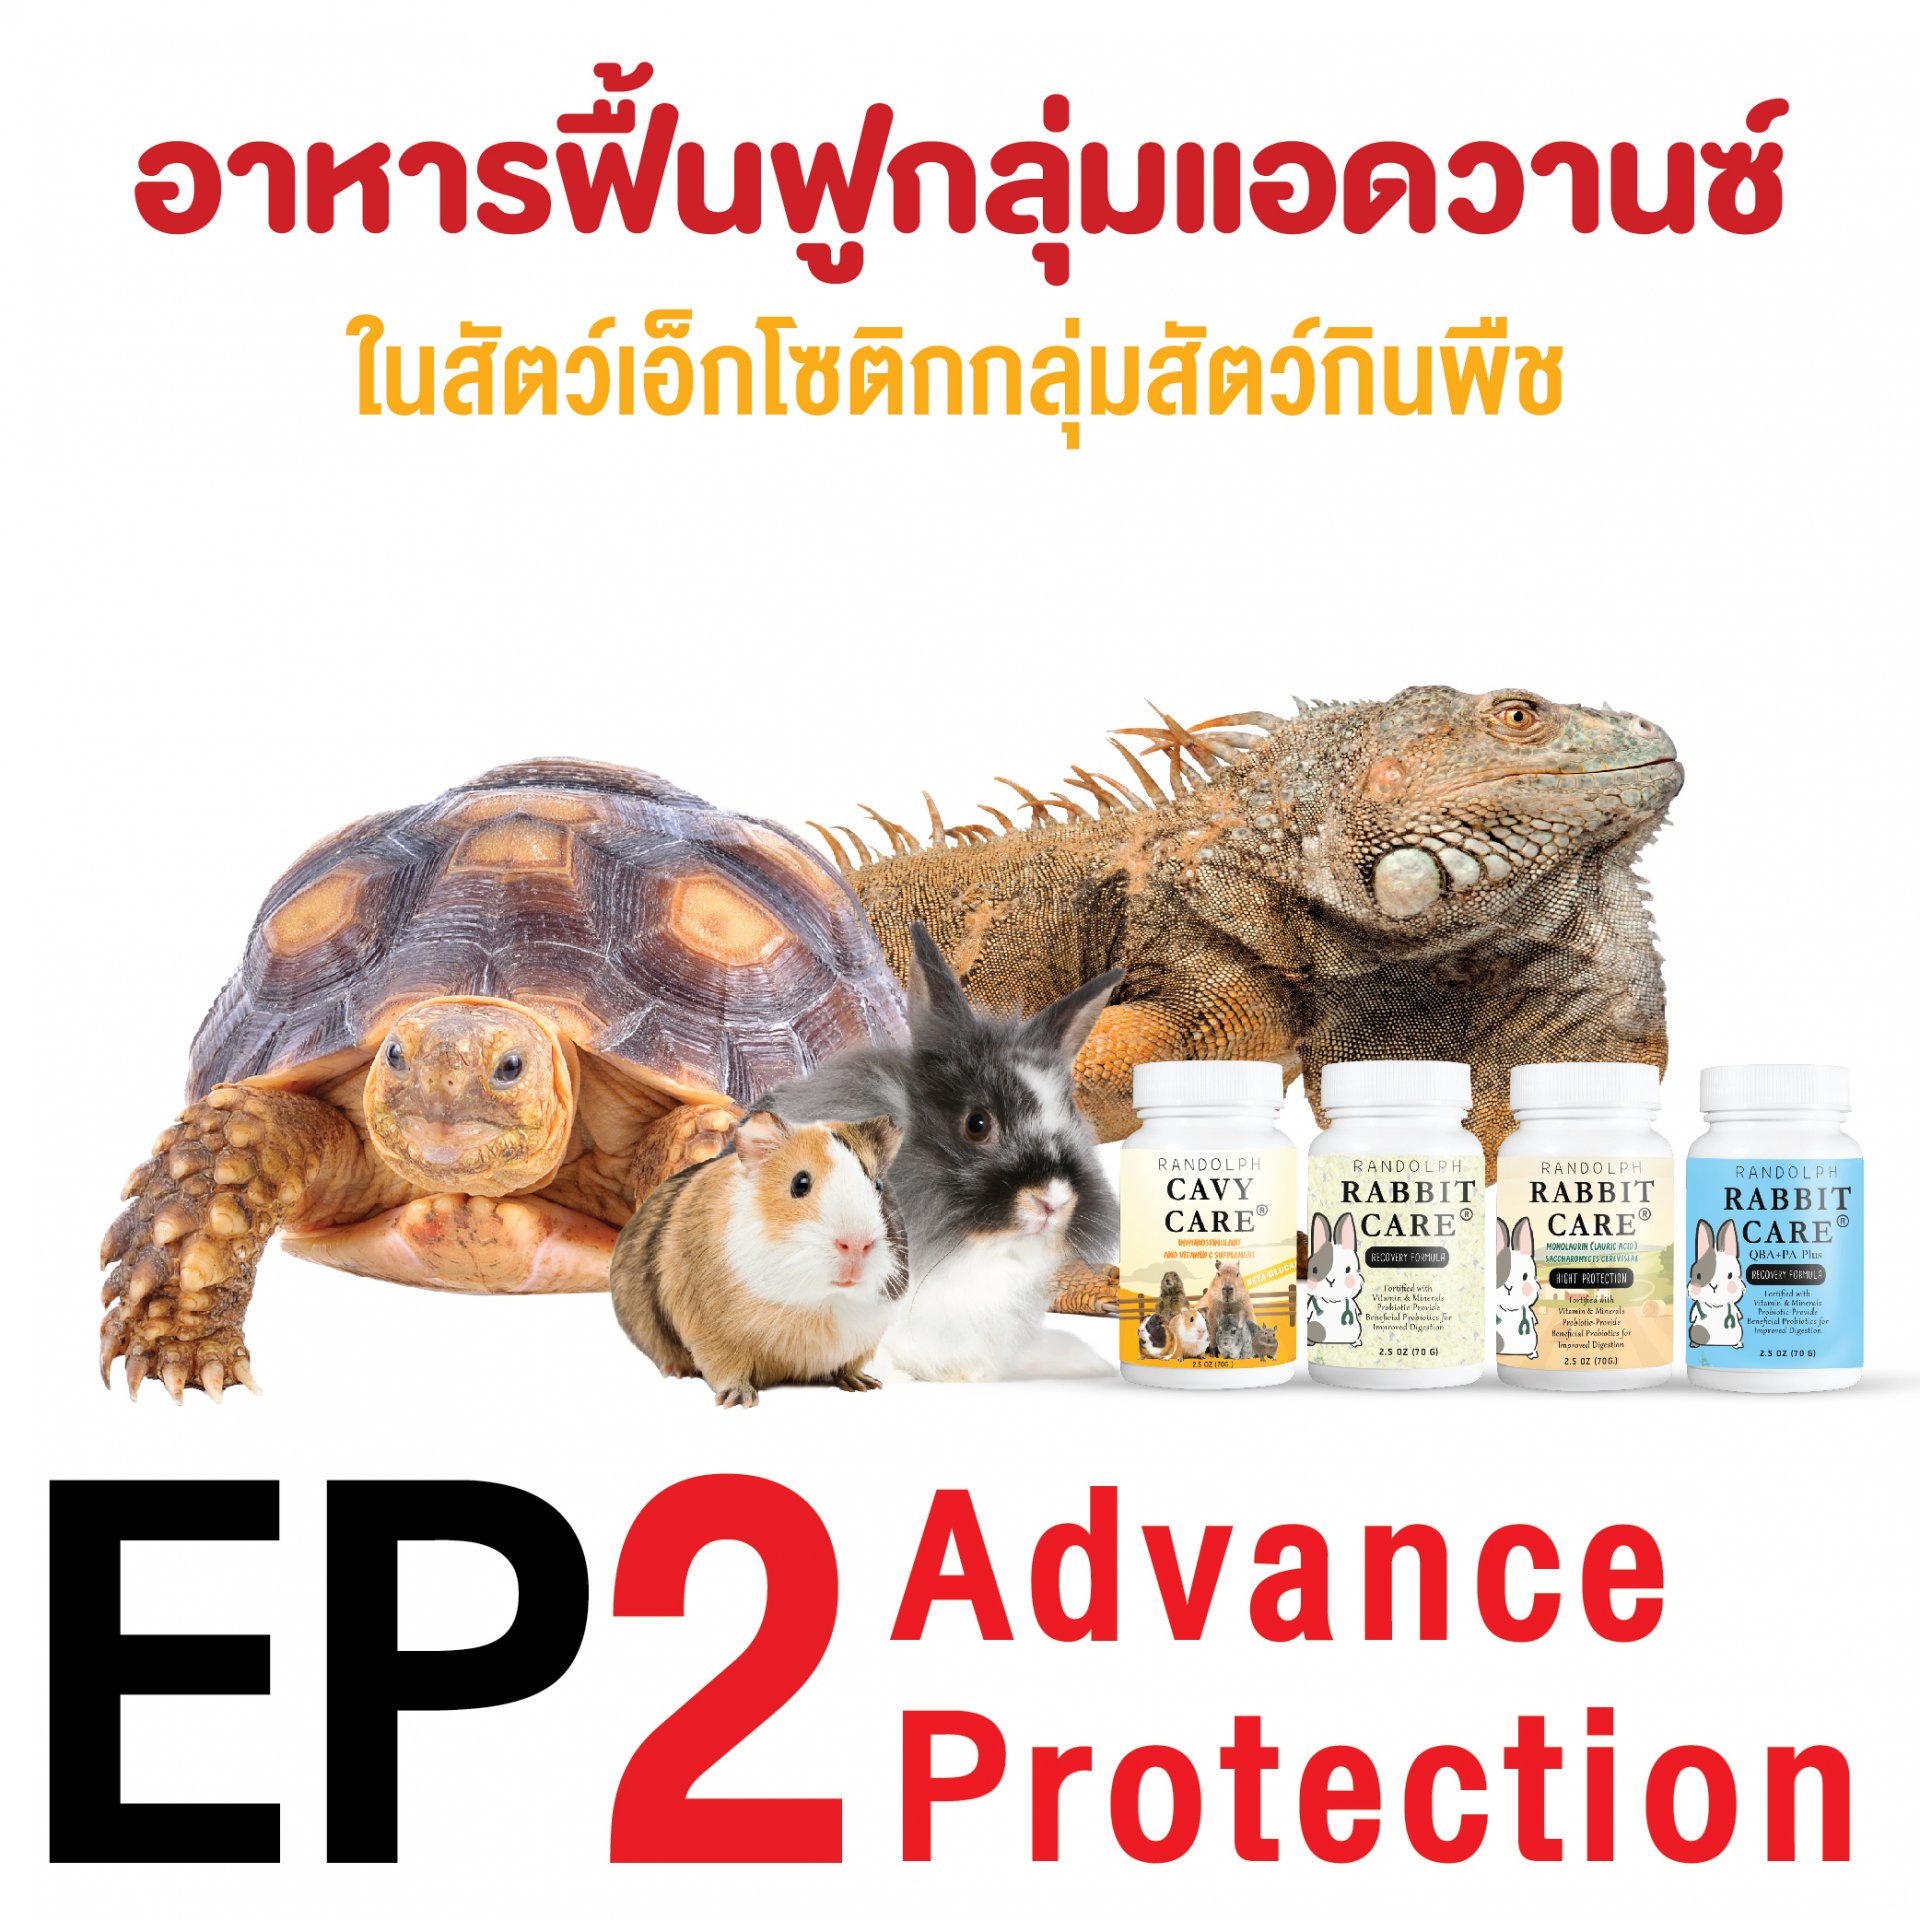 ep2. อาหารฟื้นฟูสุขภาพในเอ็กโซติกกลุ่มสัตว์กินพืช กลุ่ม advance protection โดย ผศ.น.สพ.ดร. สมโภชน์ วีระกุล (หมอแก้ว)